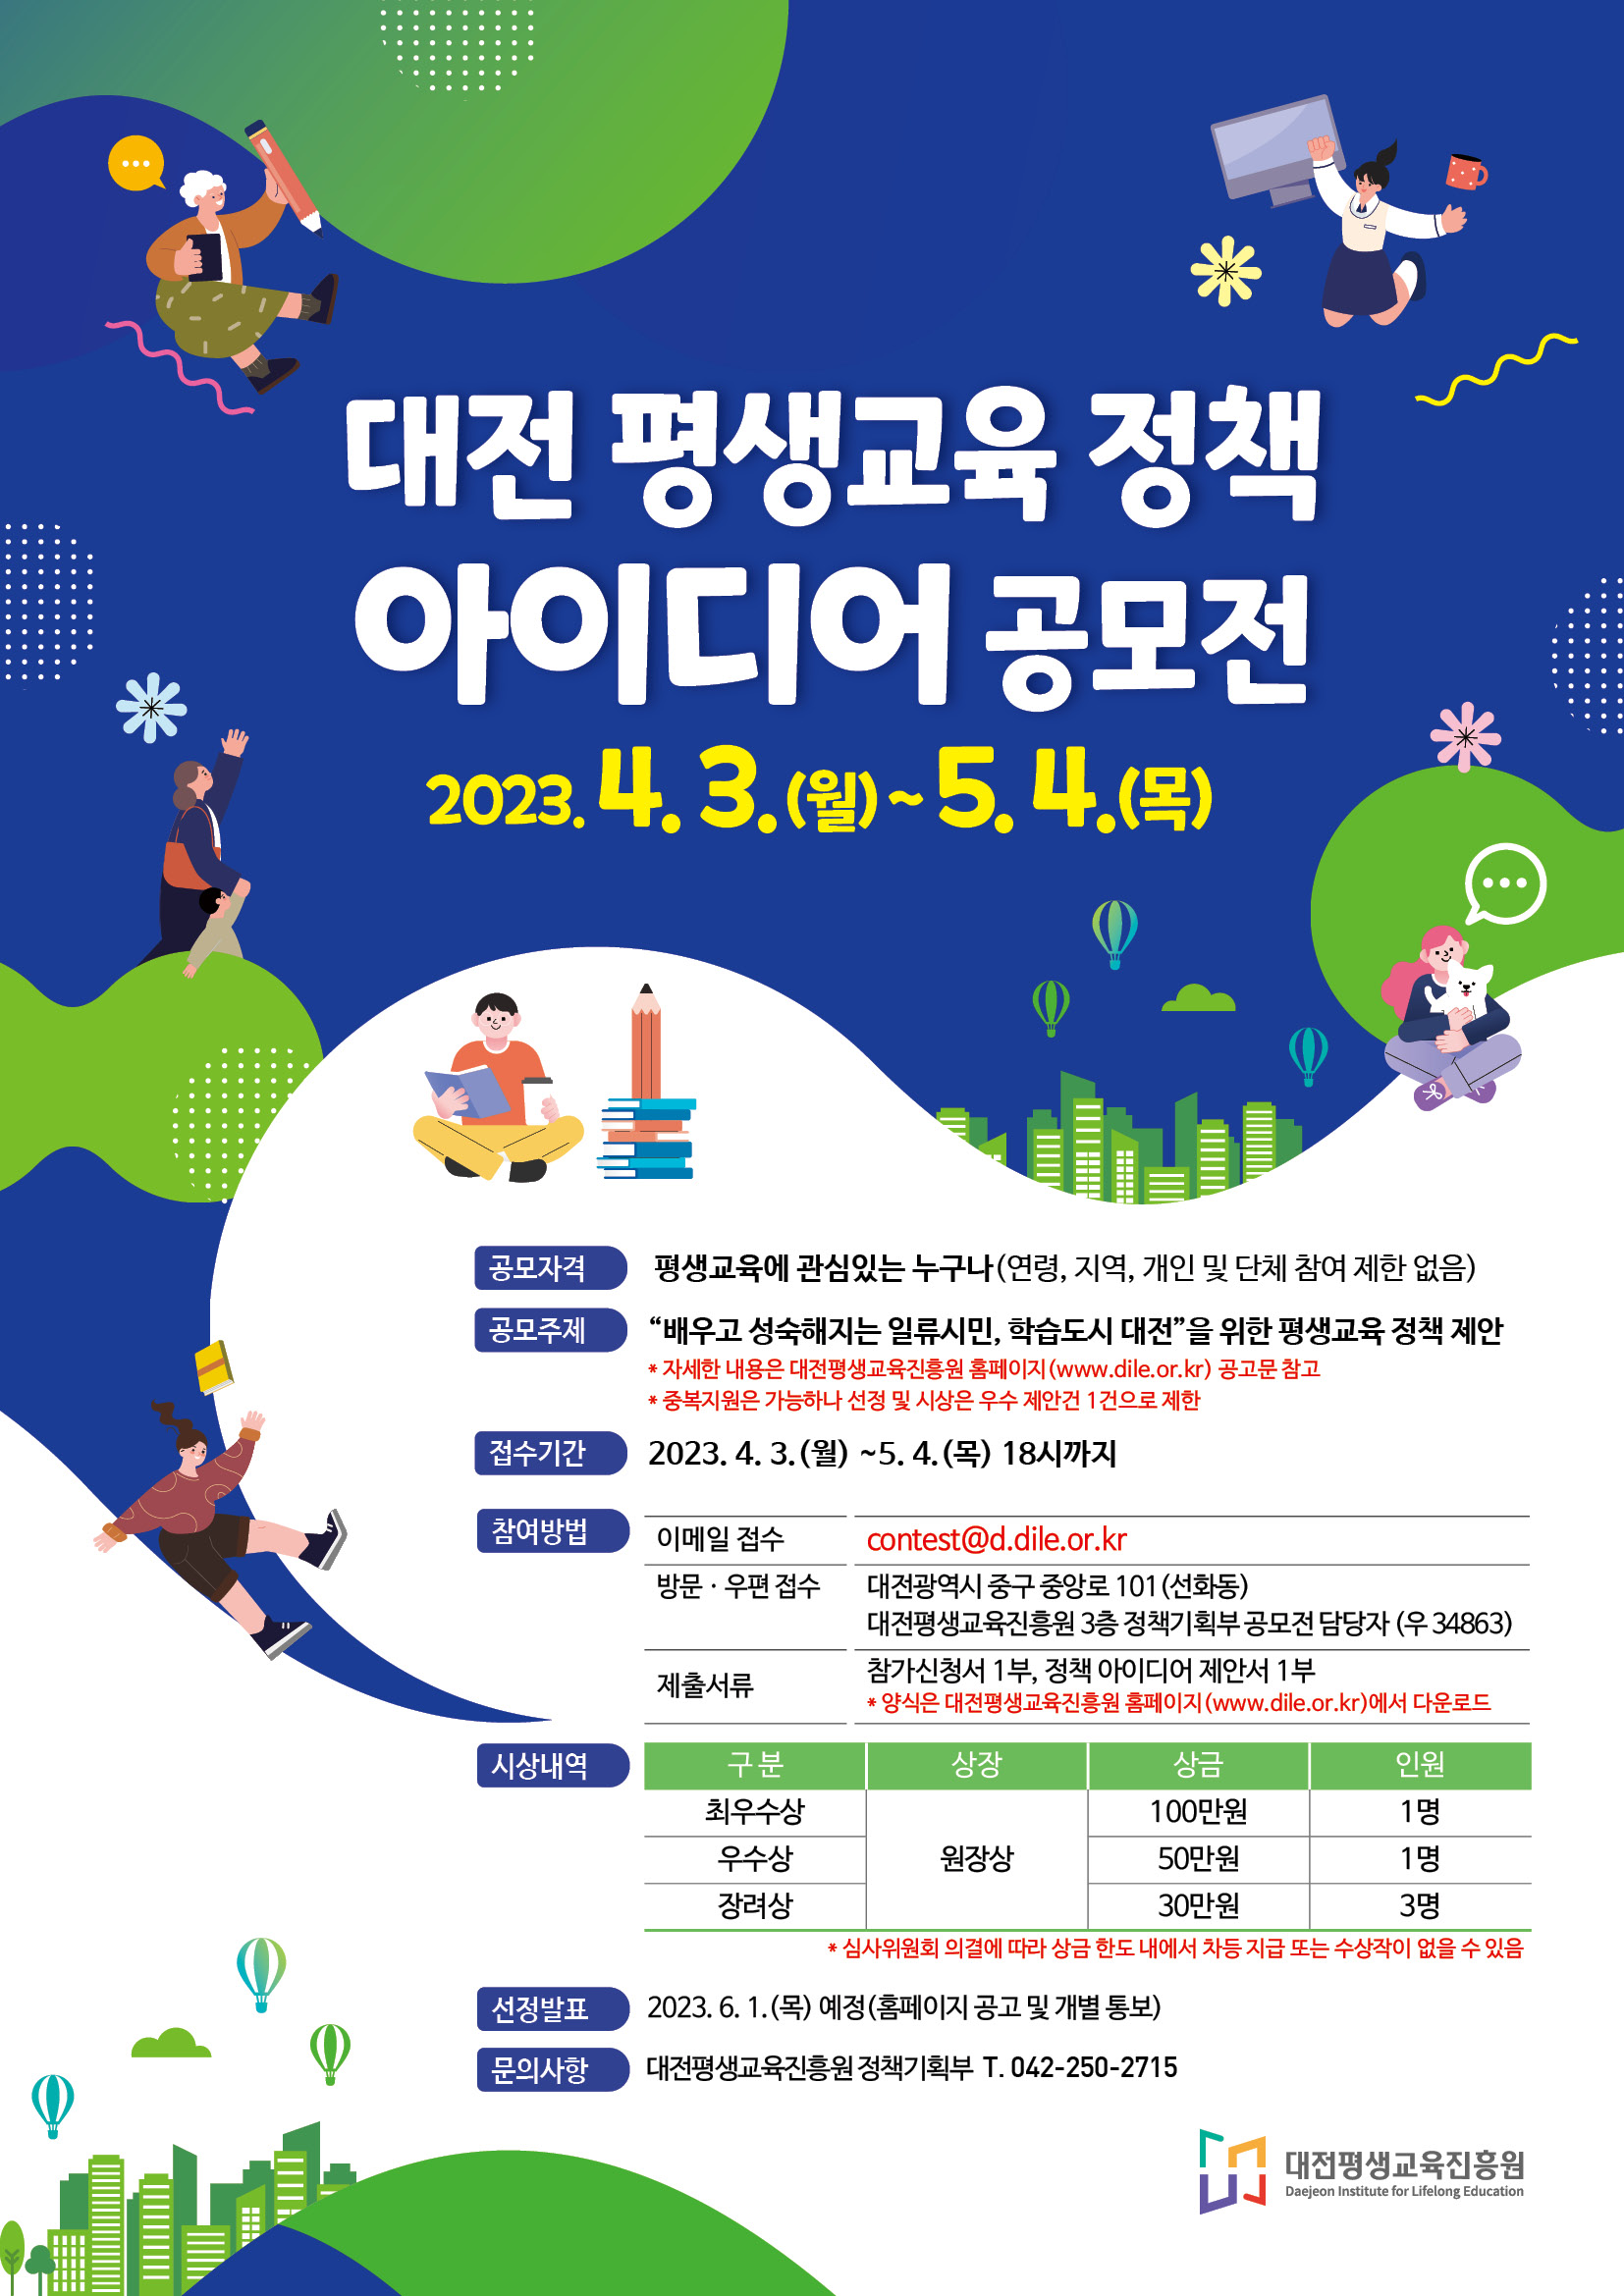  대전 평생교육 정책 아이디어 공모전 포스터.jpg